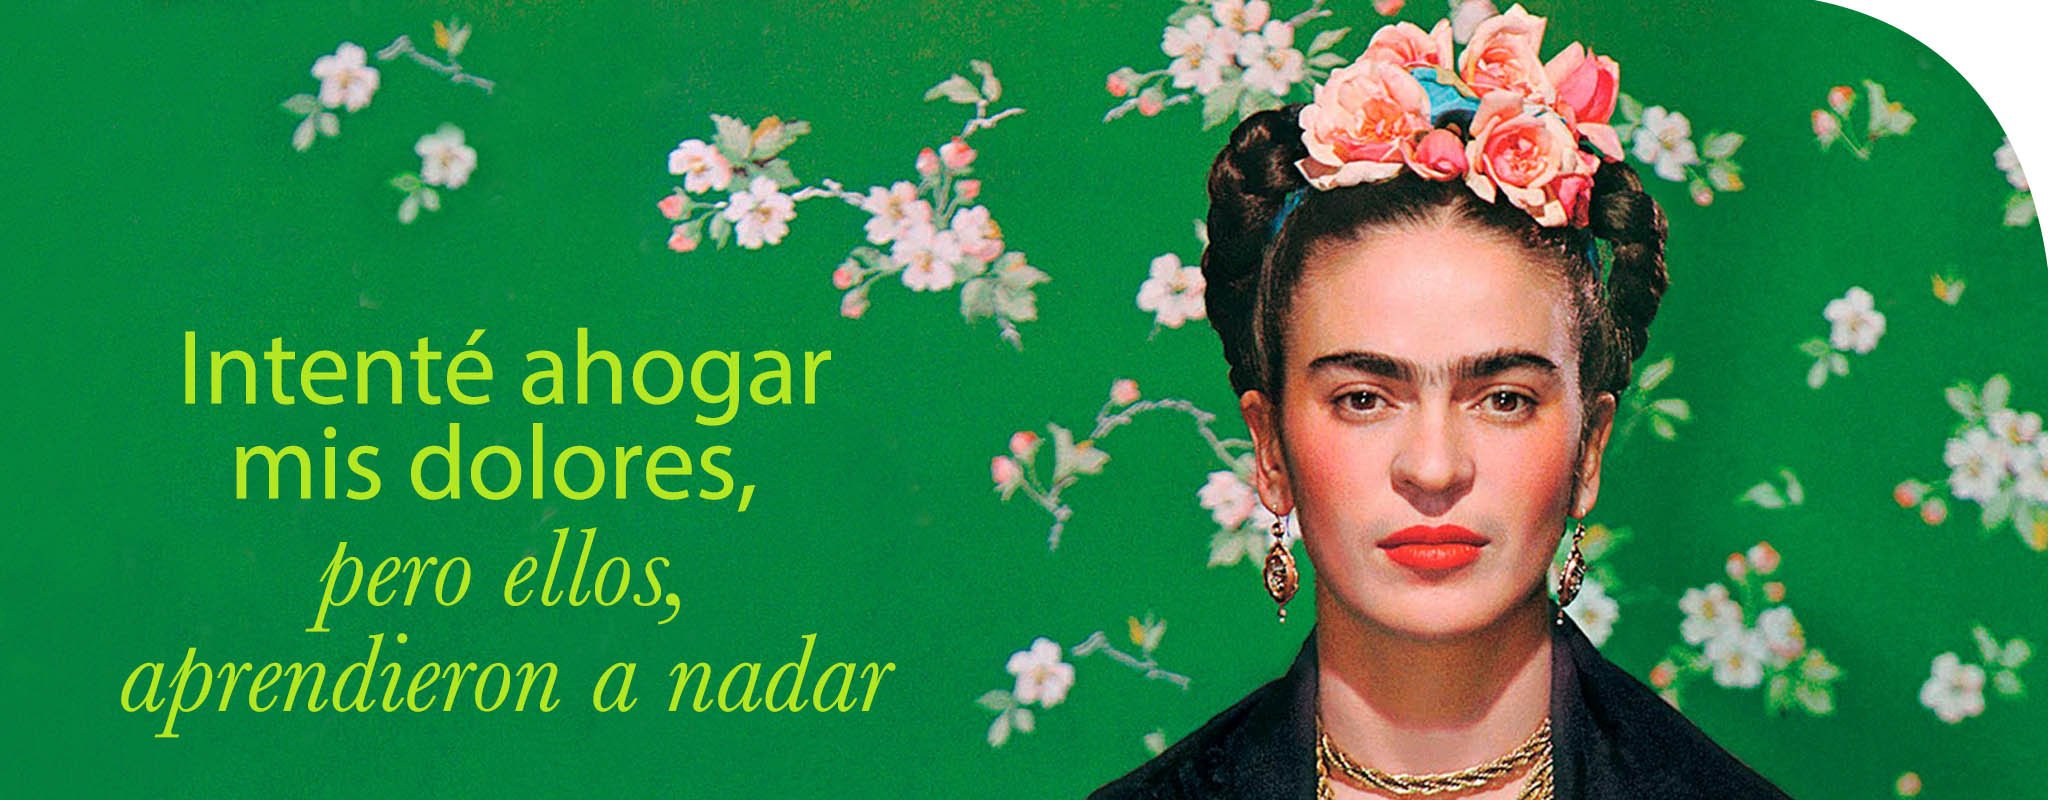 Frida: "Lo que no me mata me alimenta".